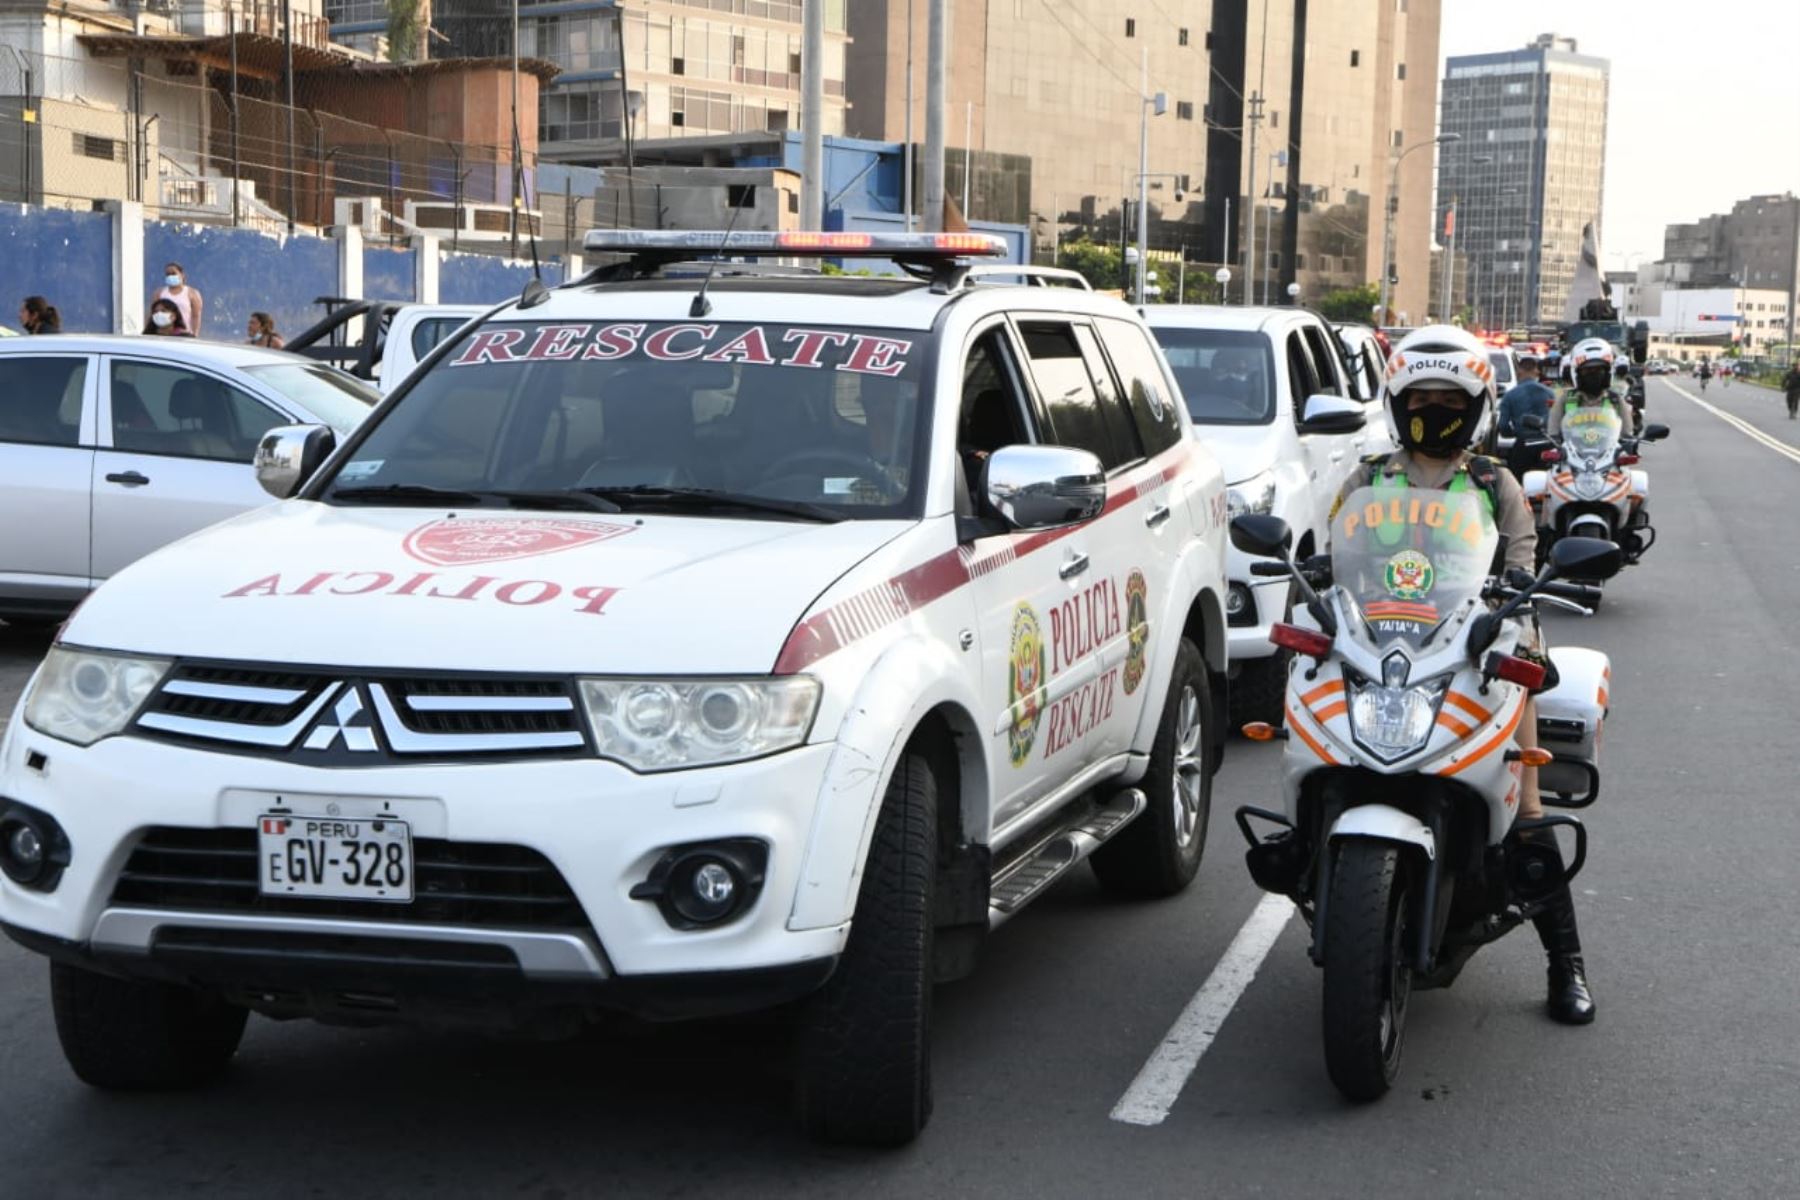 Se trata de un operativo de patrullaje focalizado en puntos críticos de Lima con el fin de fortalecer la presencia policial y contrarrestar la delincuencia. Foto: ANDINA/Mininter